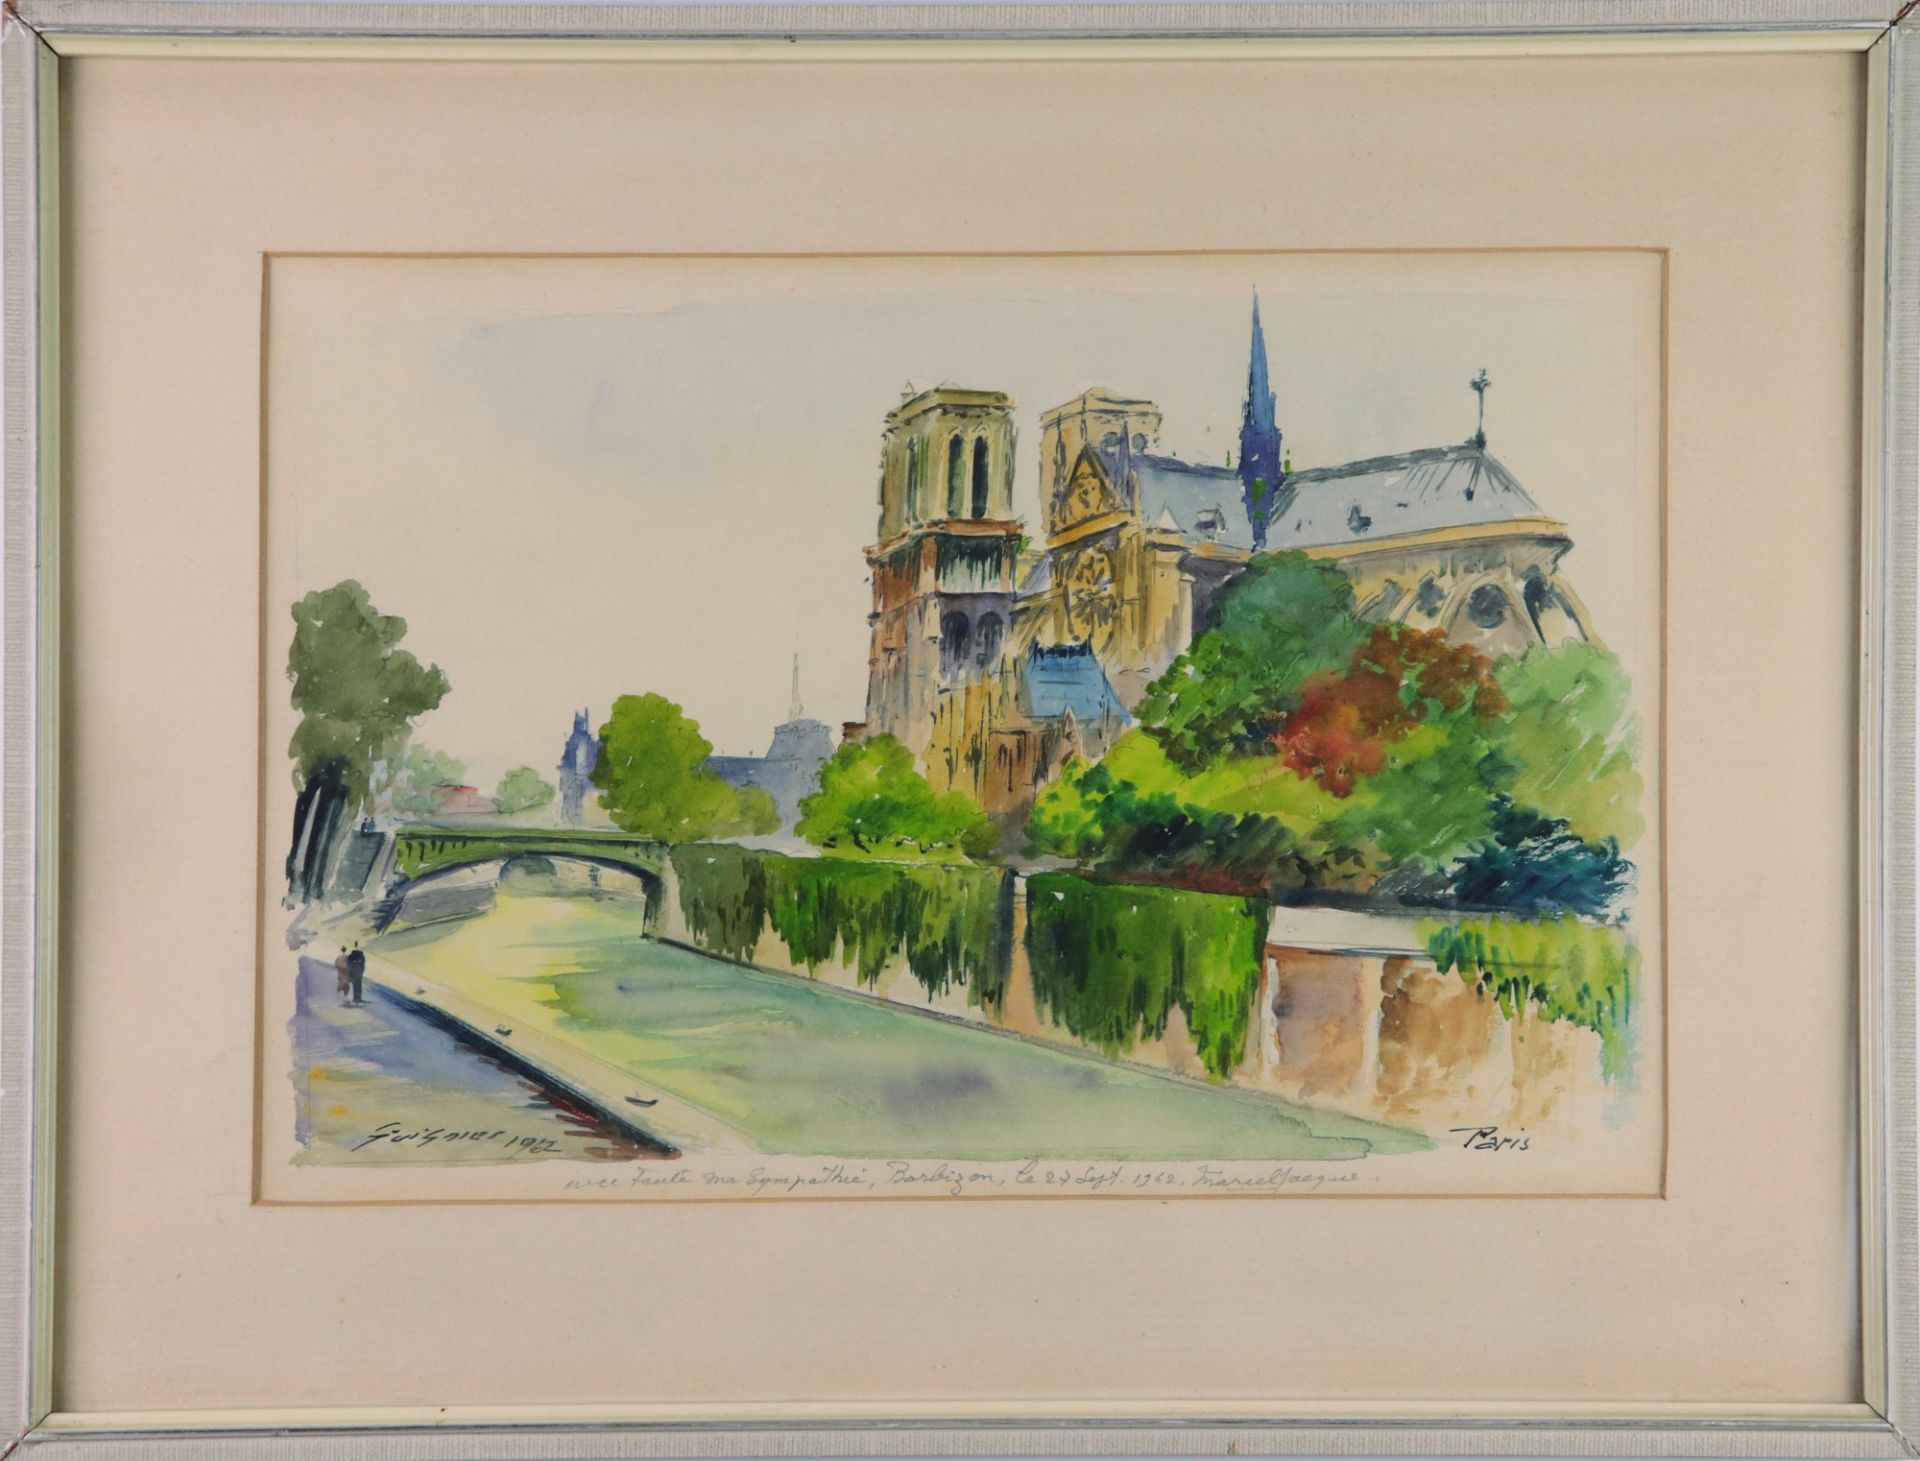 Guignier, Fernand 1902 Montpellier - 1972 Nantes, Studium an der École des Beaux Arts in Paris, "